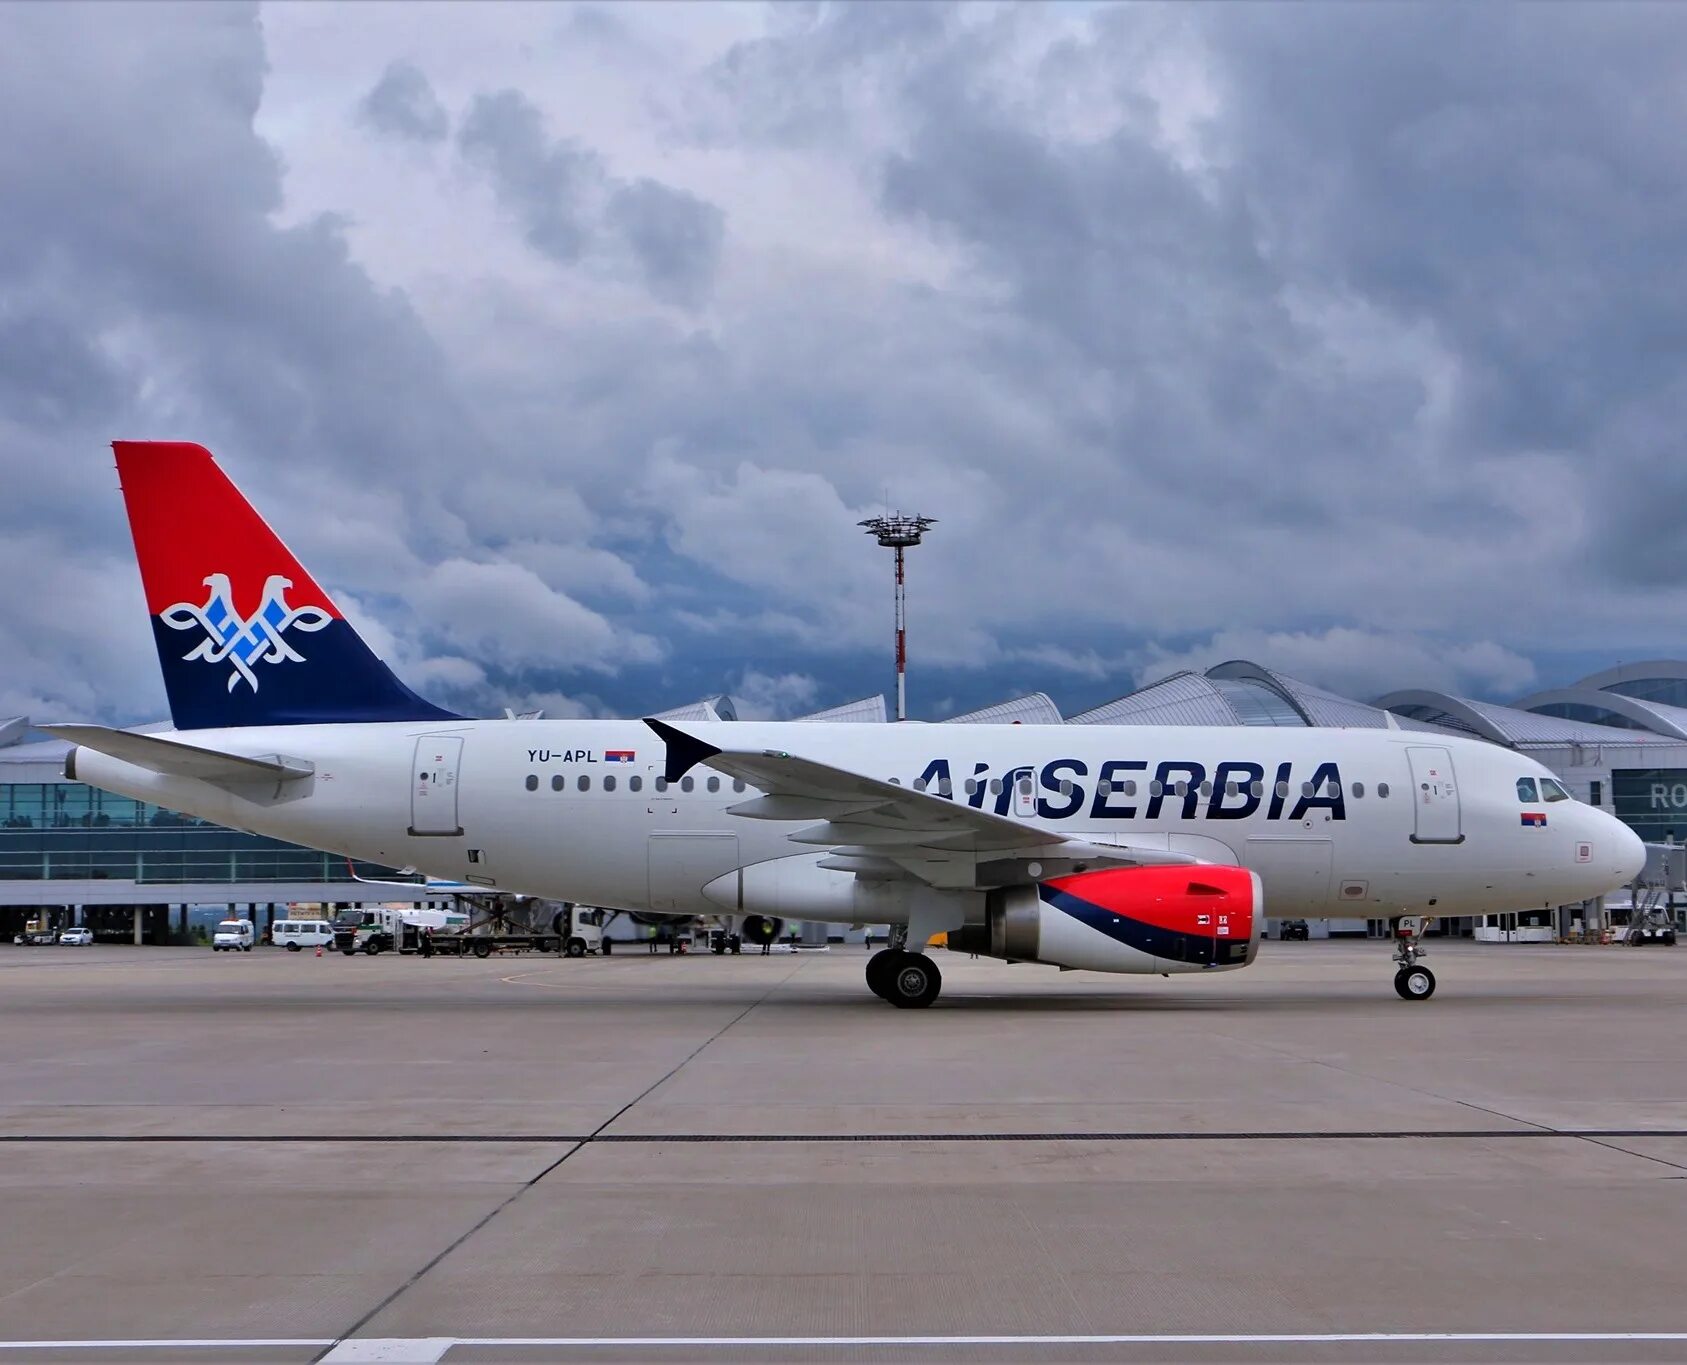 Купить авиабилет эйр сербия. Airbus a319 Air Serbia. A319 Air Serbia в Шереметьево. Air Serbia Airbus a319 Business. Airbus a319 Air Serbia места.